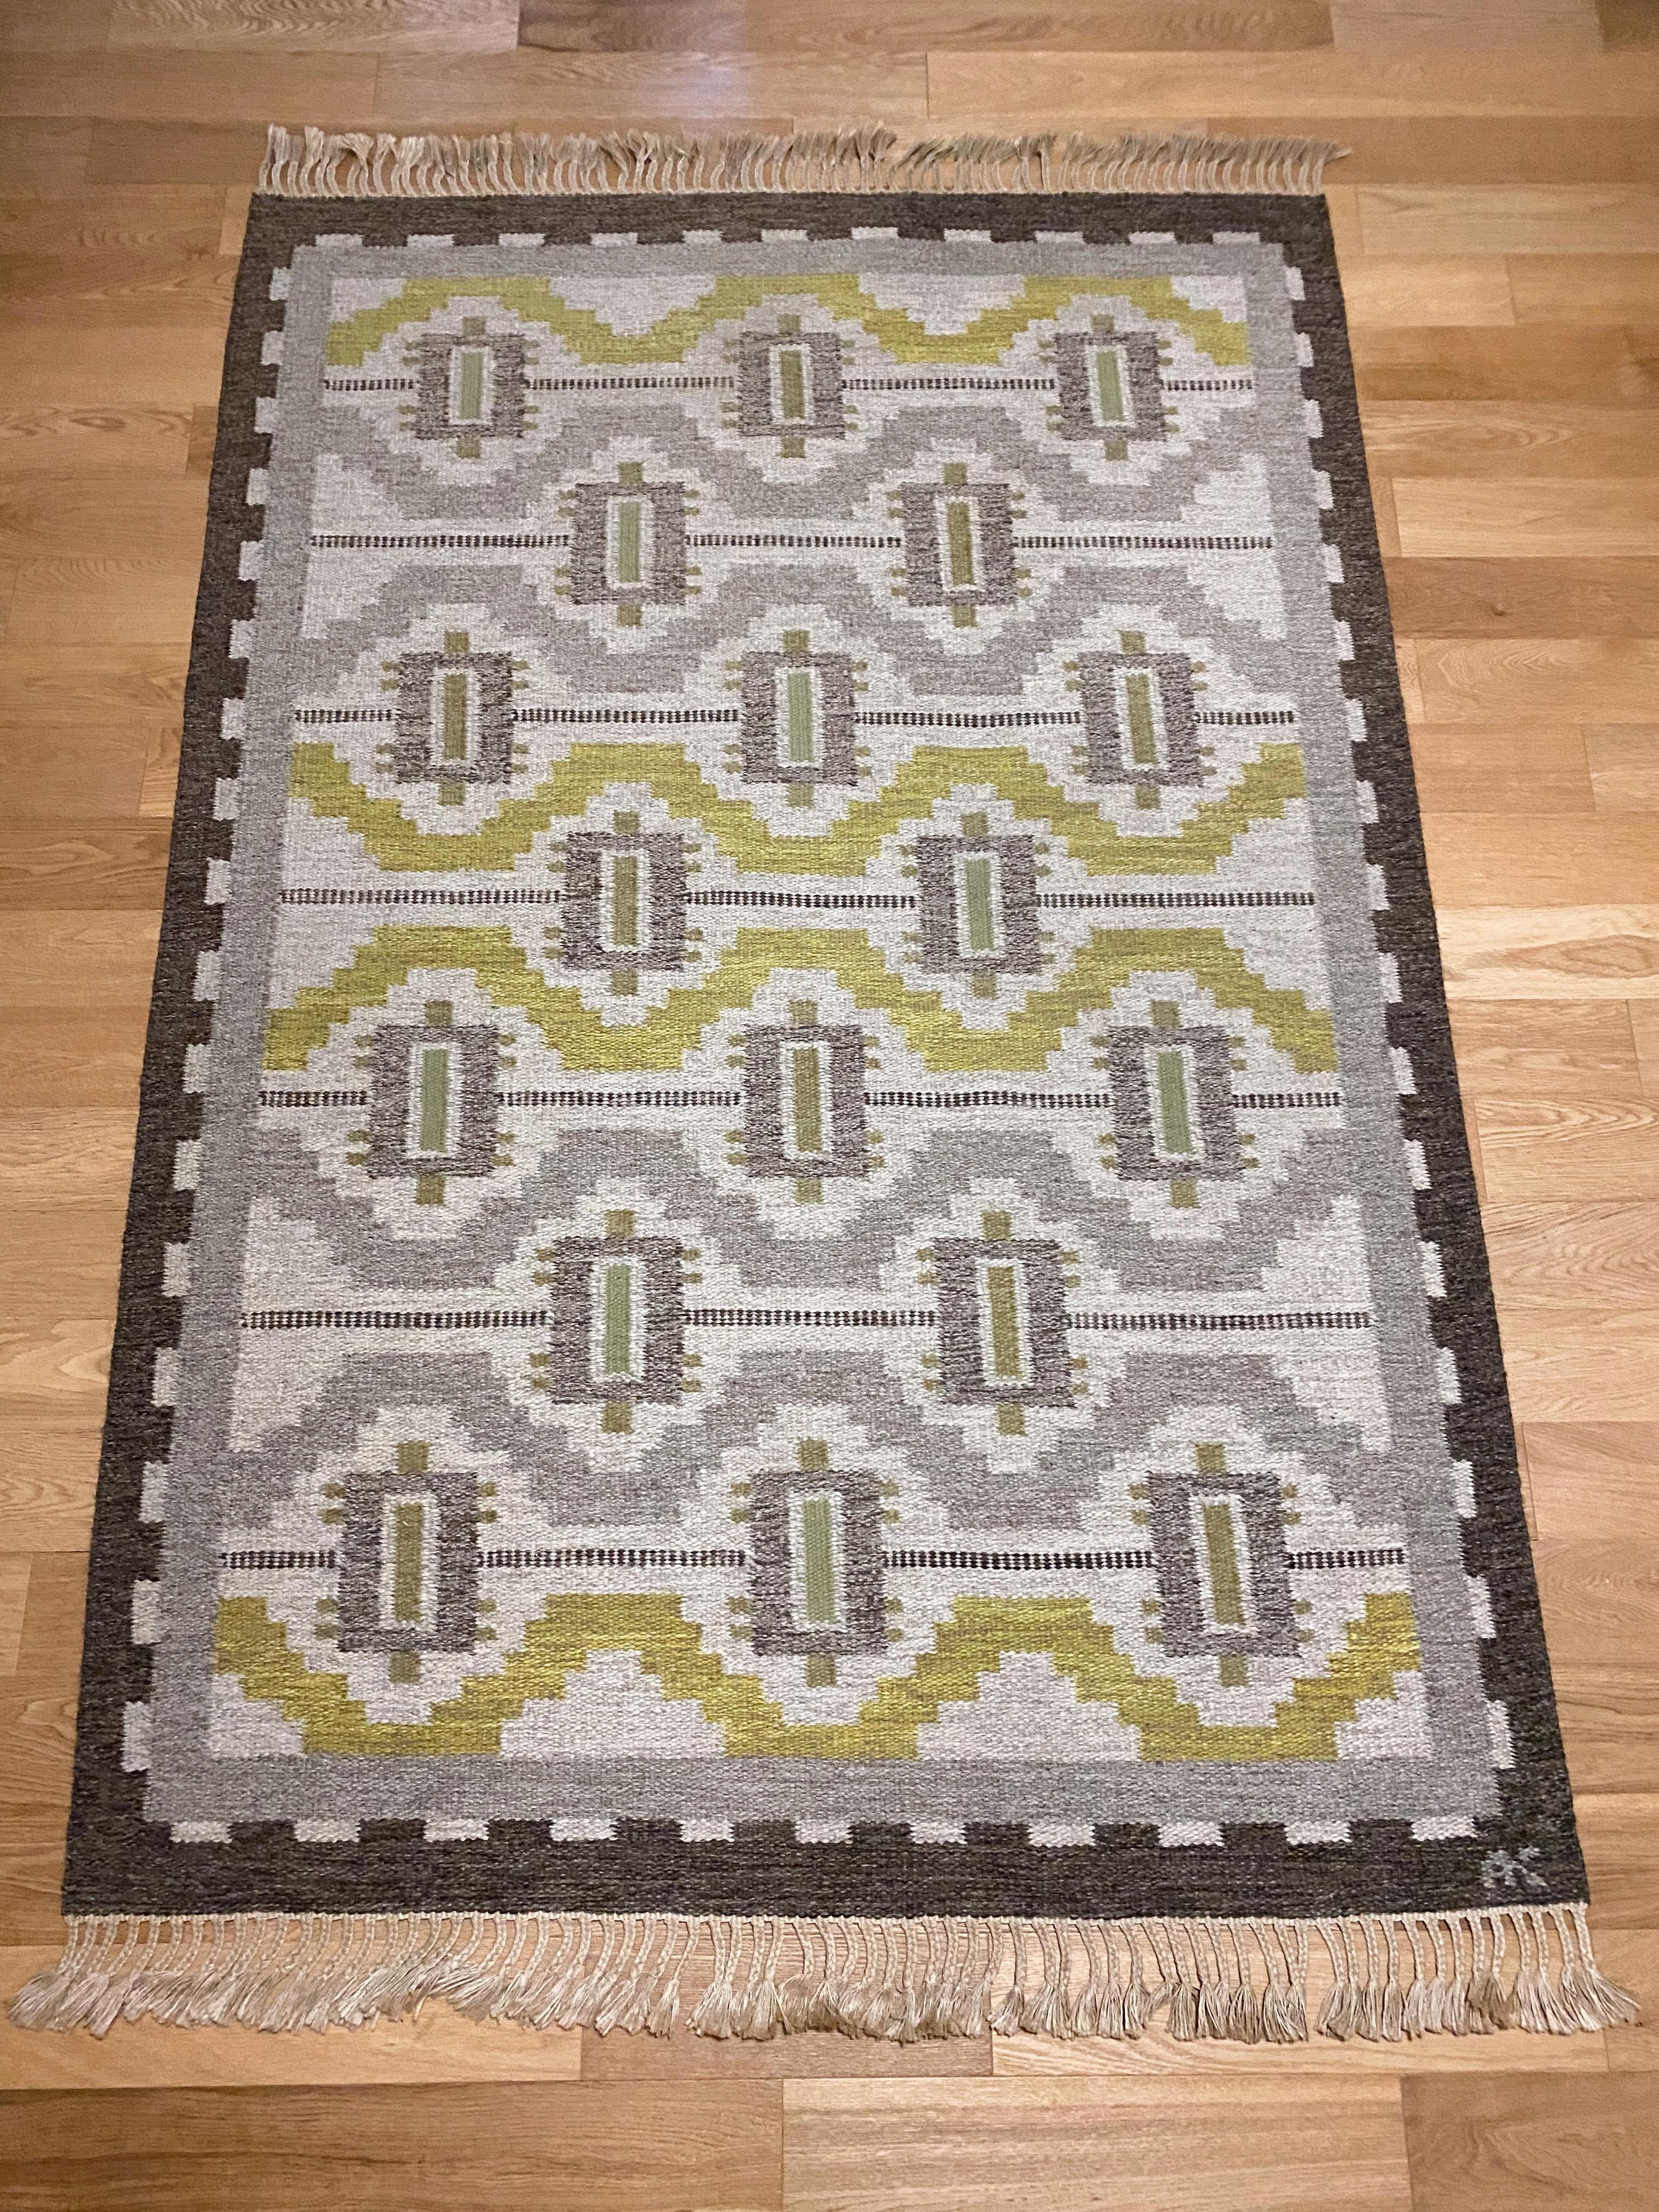 Superbe tapis suédois vintage par Aina Kånge. Un design géométrique dans l'esprit du renouveau grec comme beaucoup de tapis d'Aina Kånges. Couleurs gris, jaune, vert et anthracite. Aucun signe d'usure et en très bon état avec toutes les franges